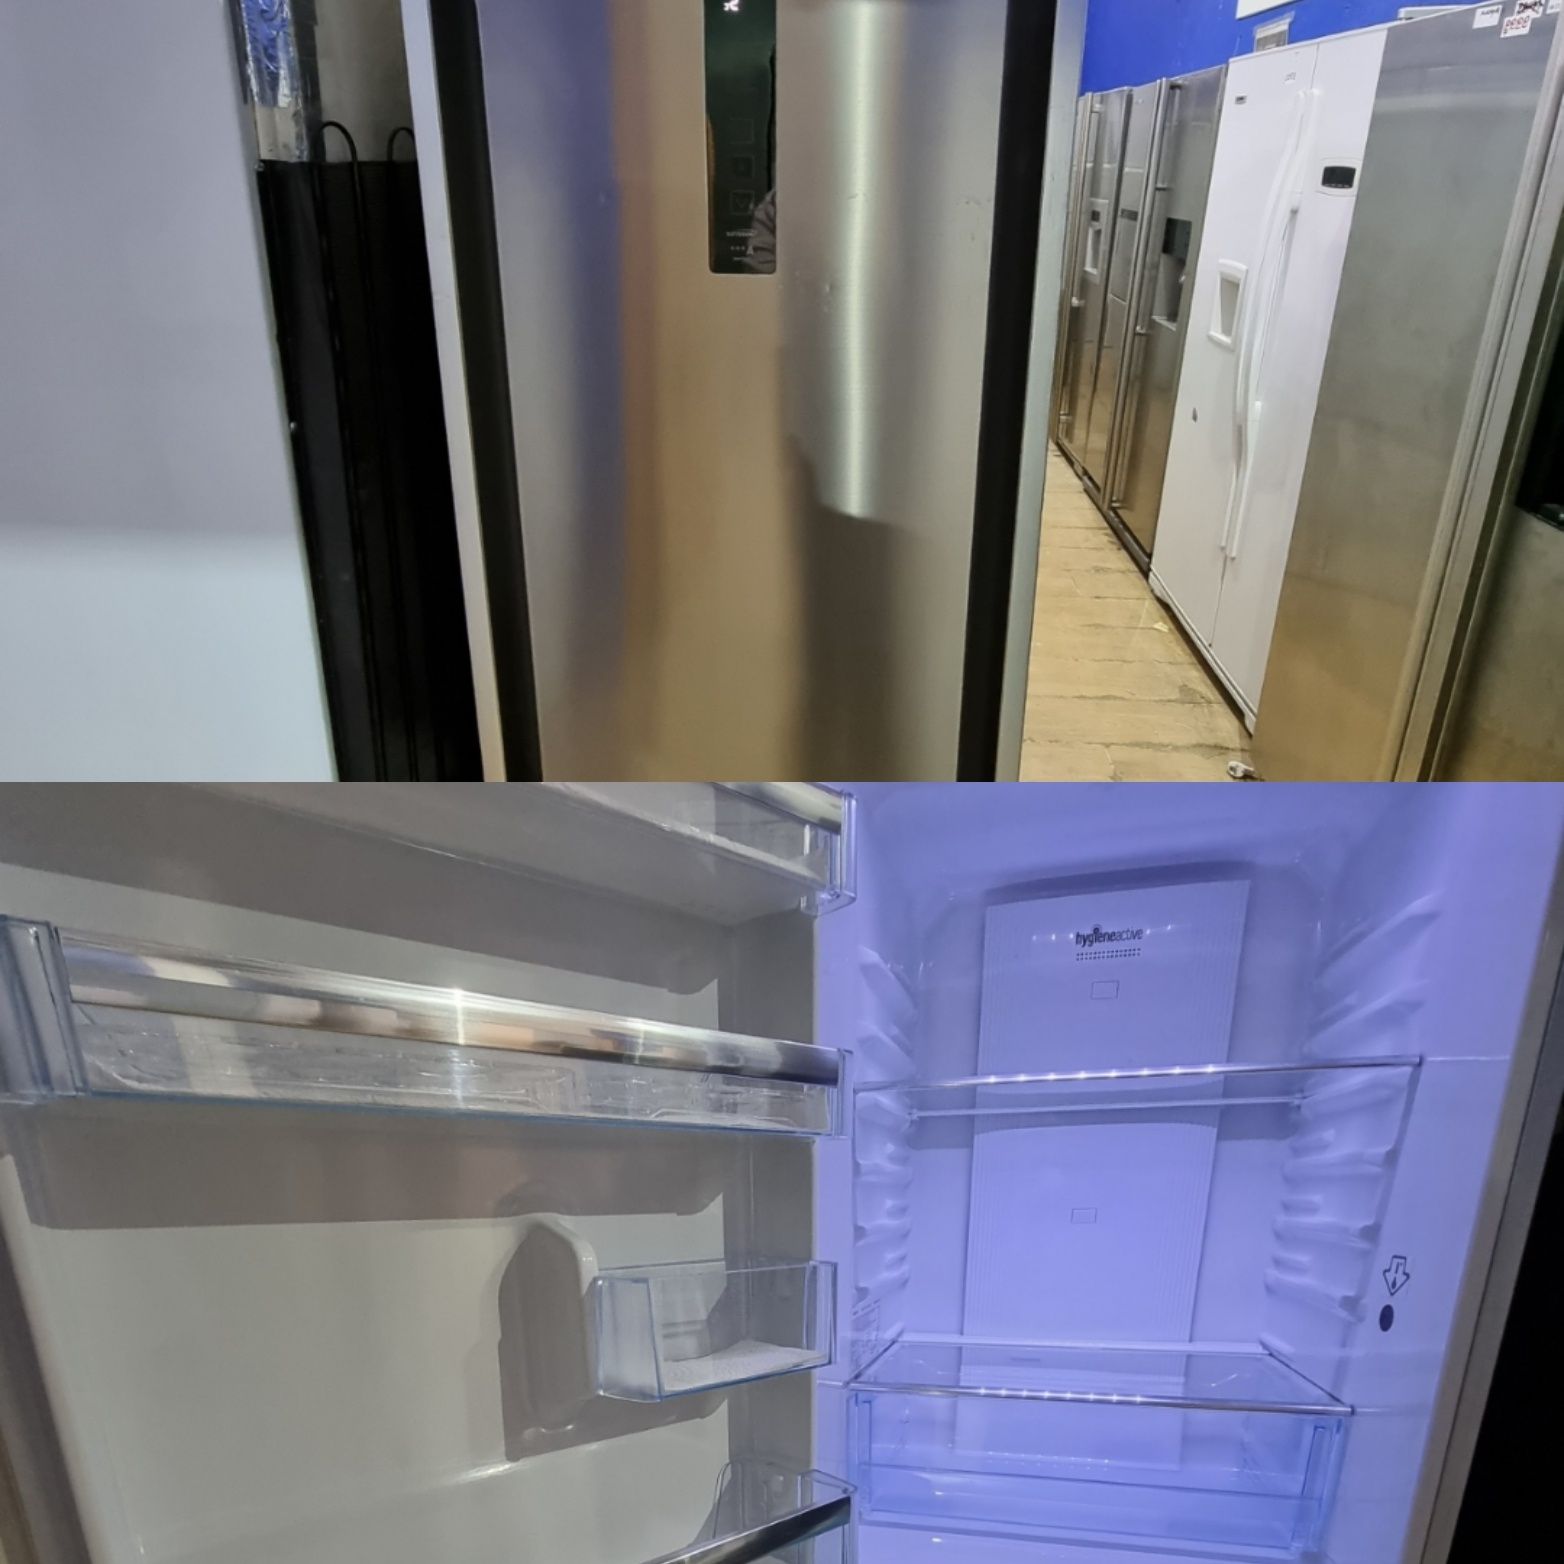 Сучасний холодильник Beko 1054w  привезений із Німеччини